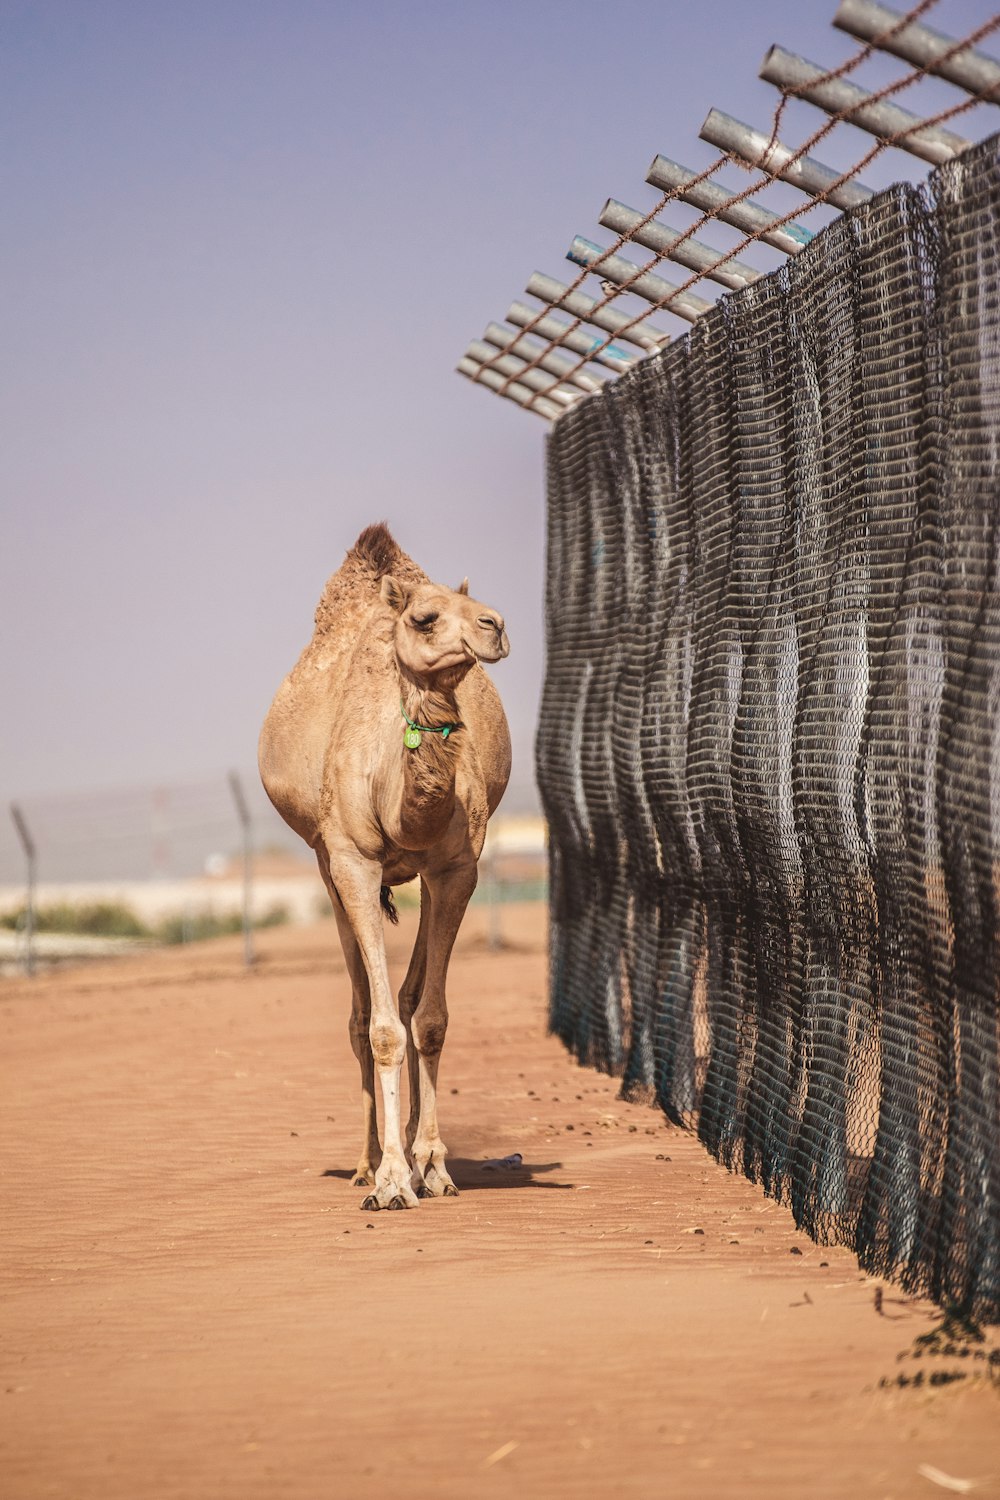 camello marrón cerca de una valla metálica gris durante el día